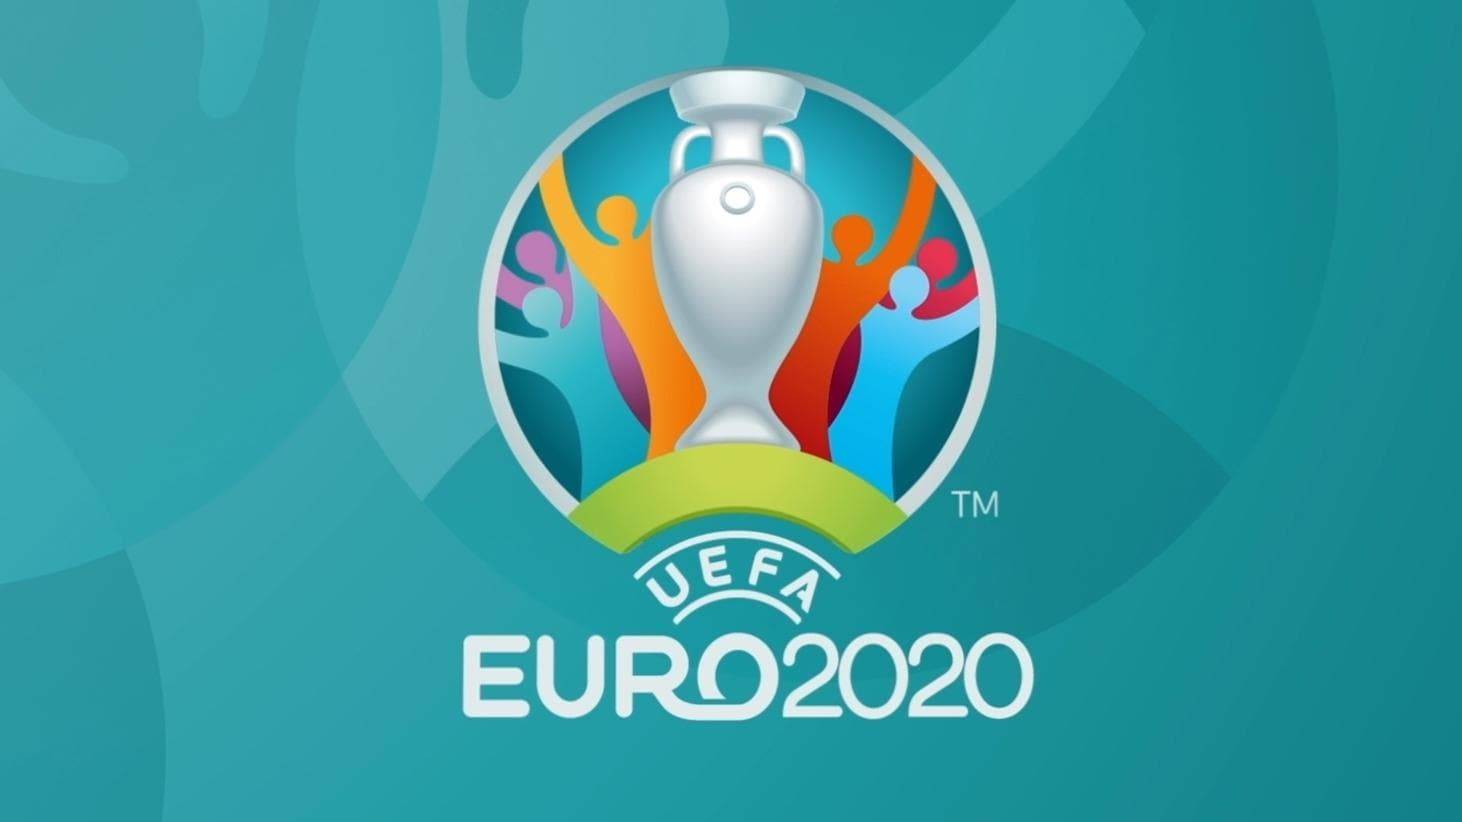 Британских и украинских болельщиков не пустят на матч Евро 2020 в Италию